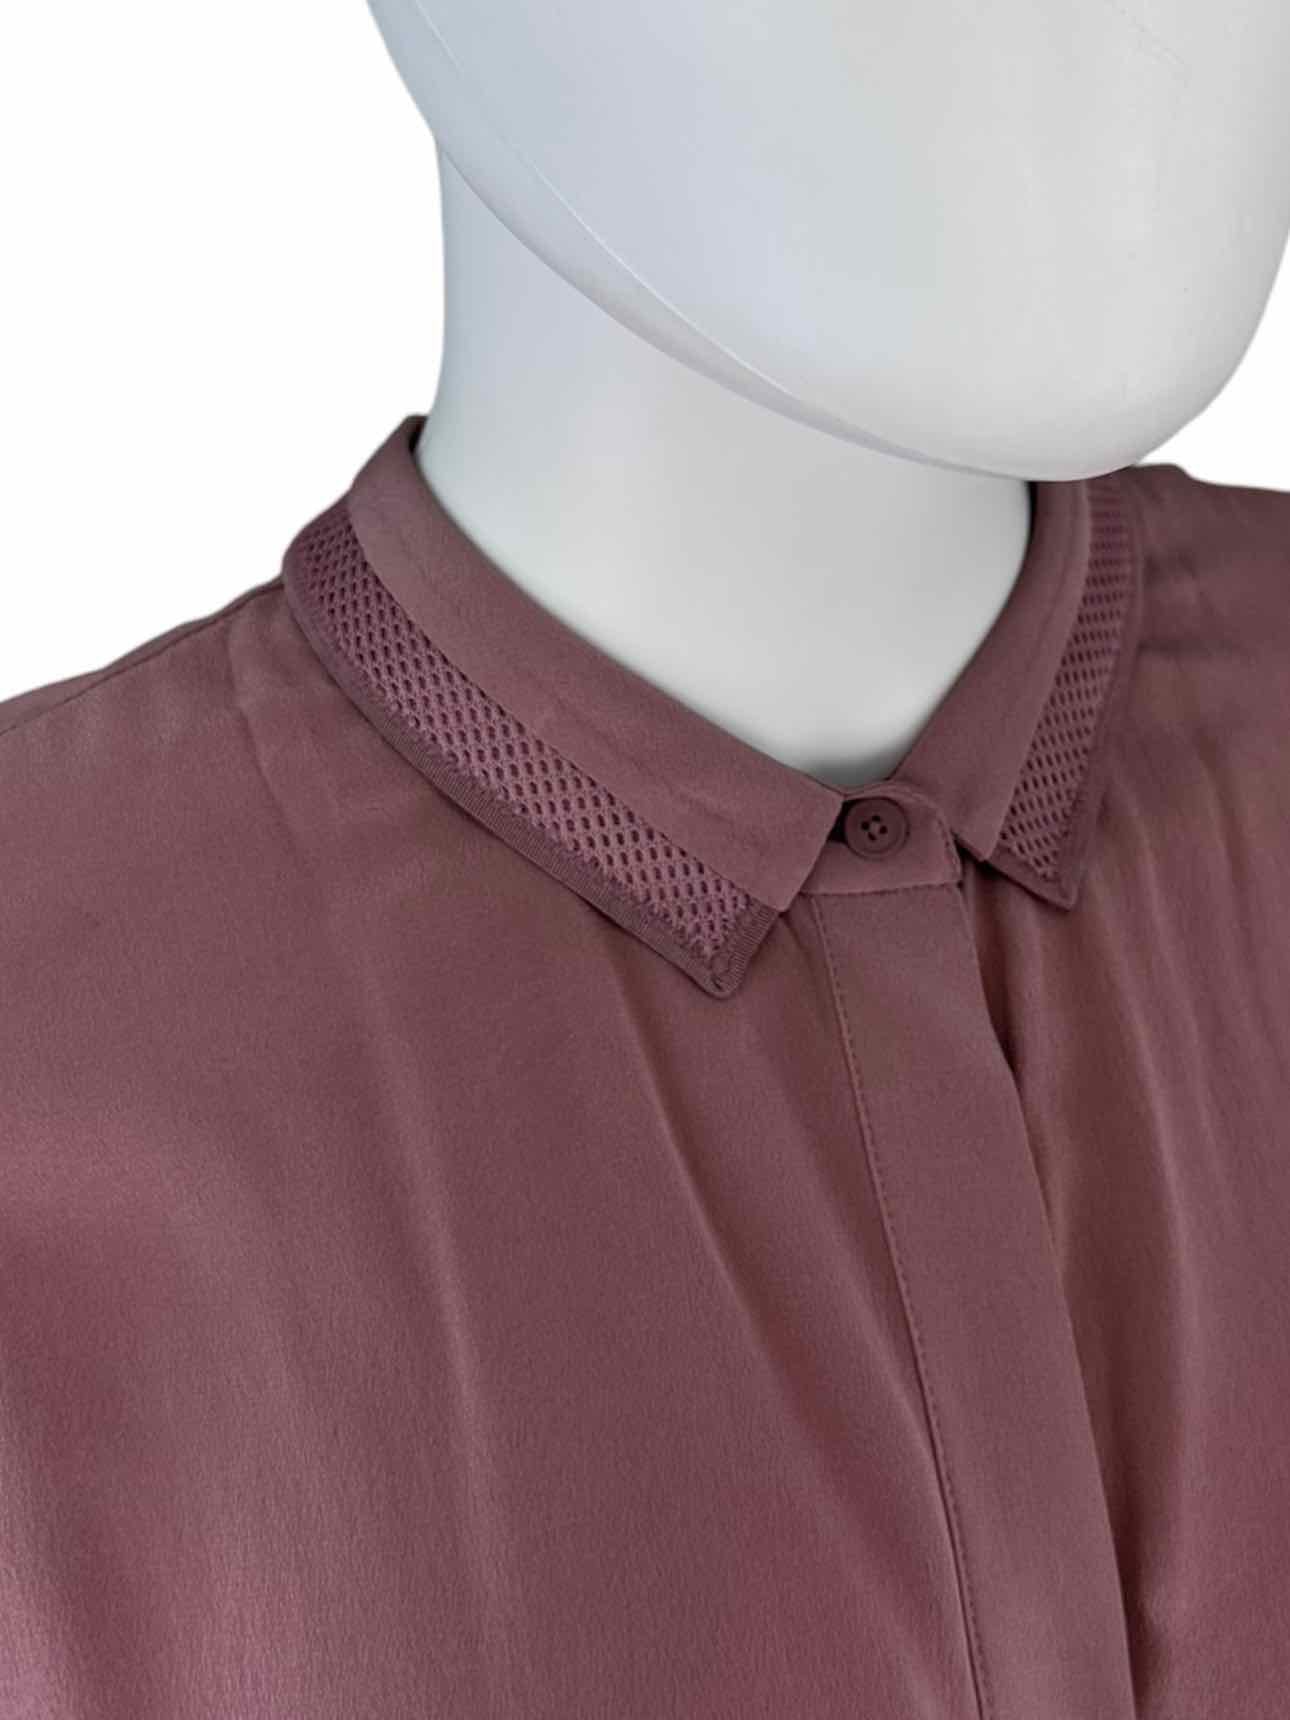 ELIE TAHARI Mauve 100% Silk Pleat Detail Top Size M